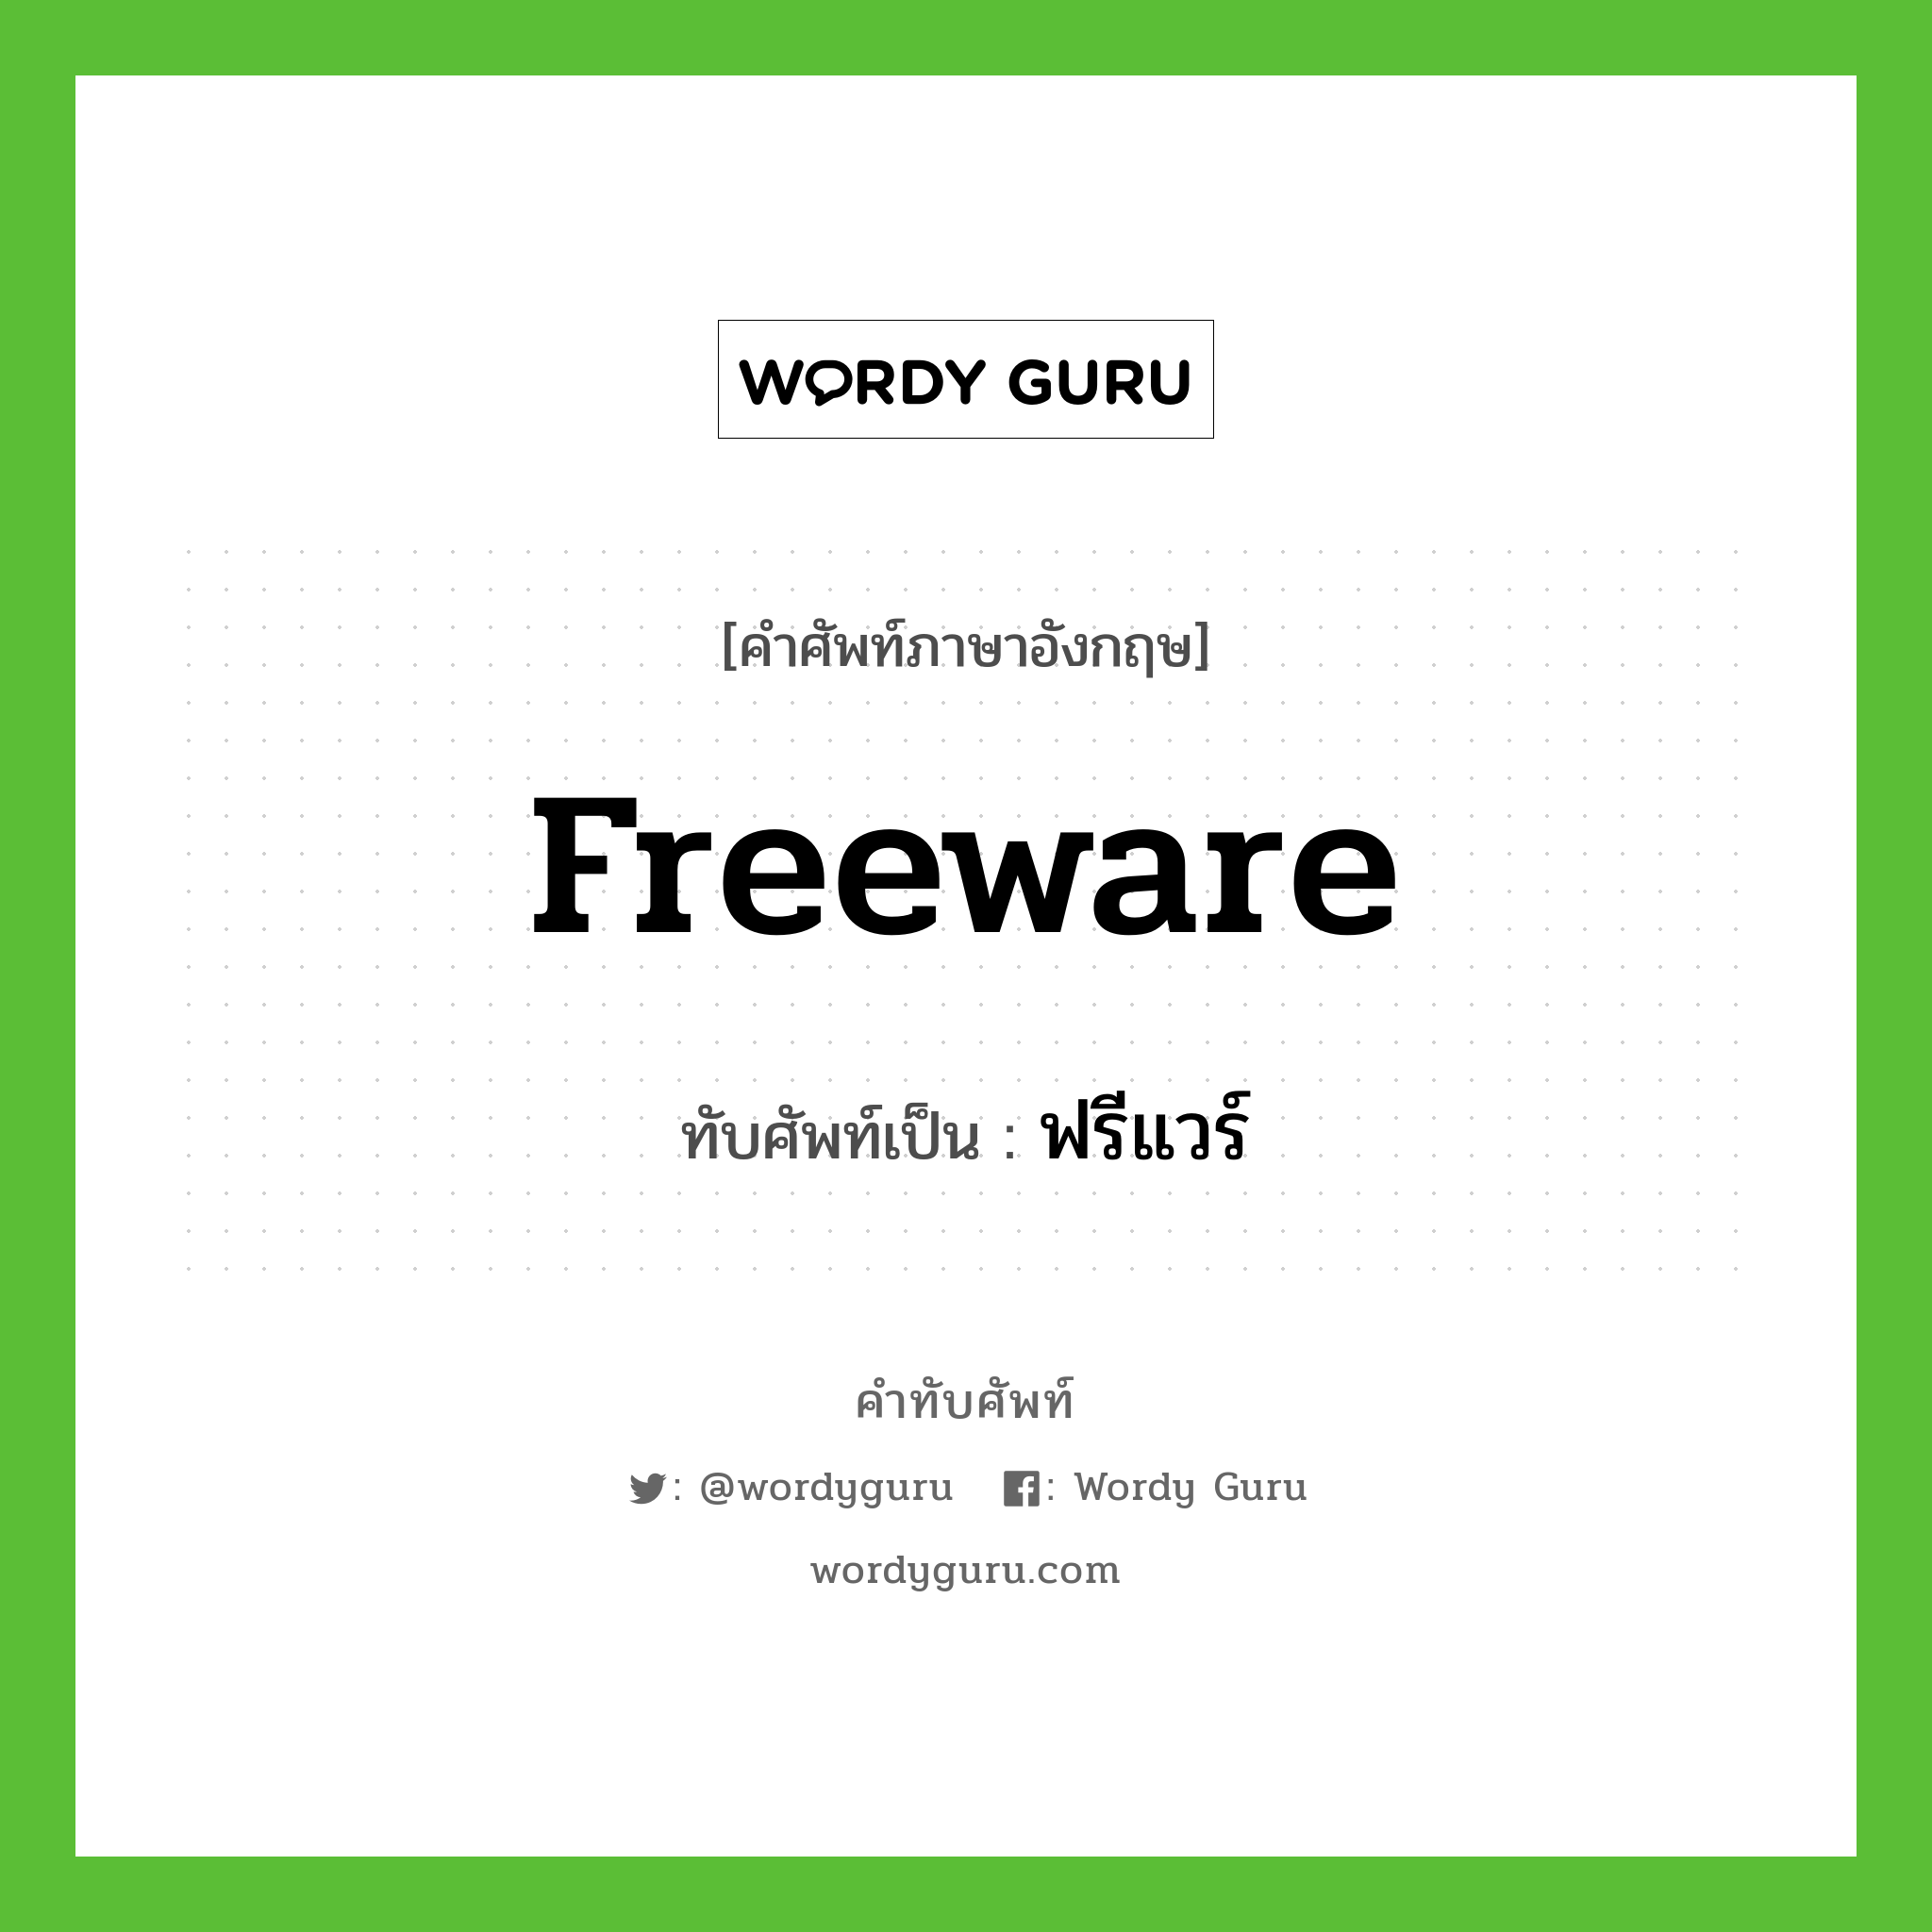 ฟรีแวร์ เขียนอย่างไร?, คำศัพท์ภาษาอังกฤษ ฟรีแวร์ ทับศัพท์เป็น freeware